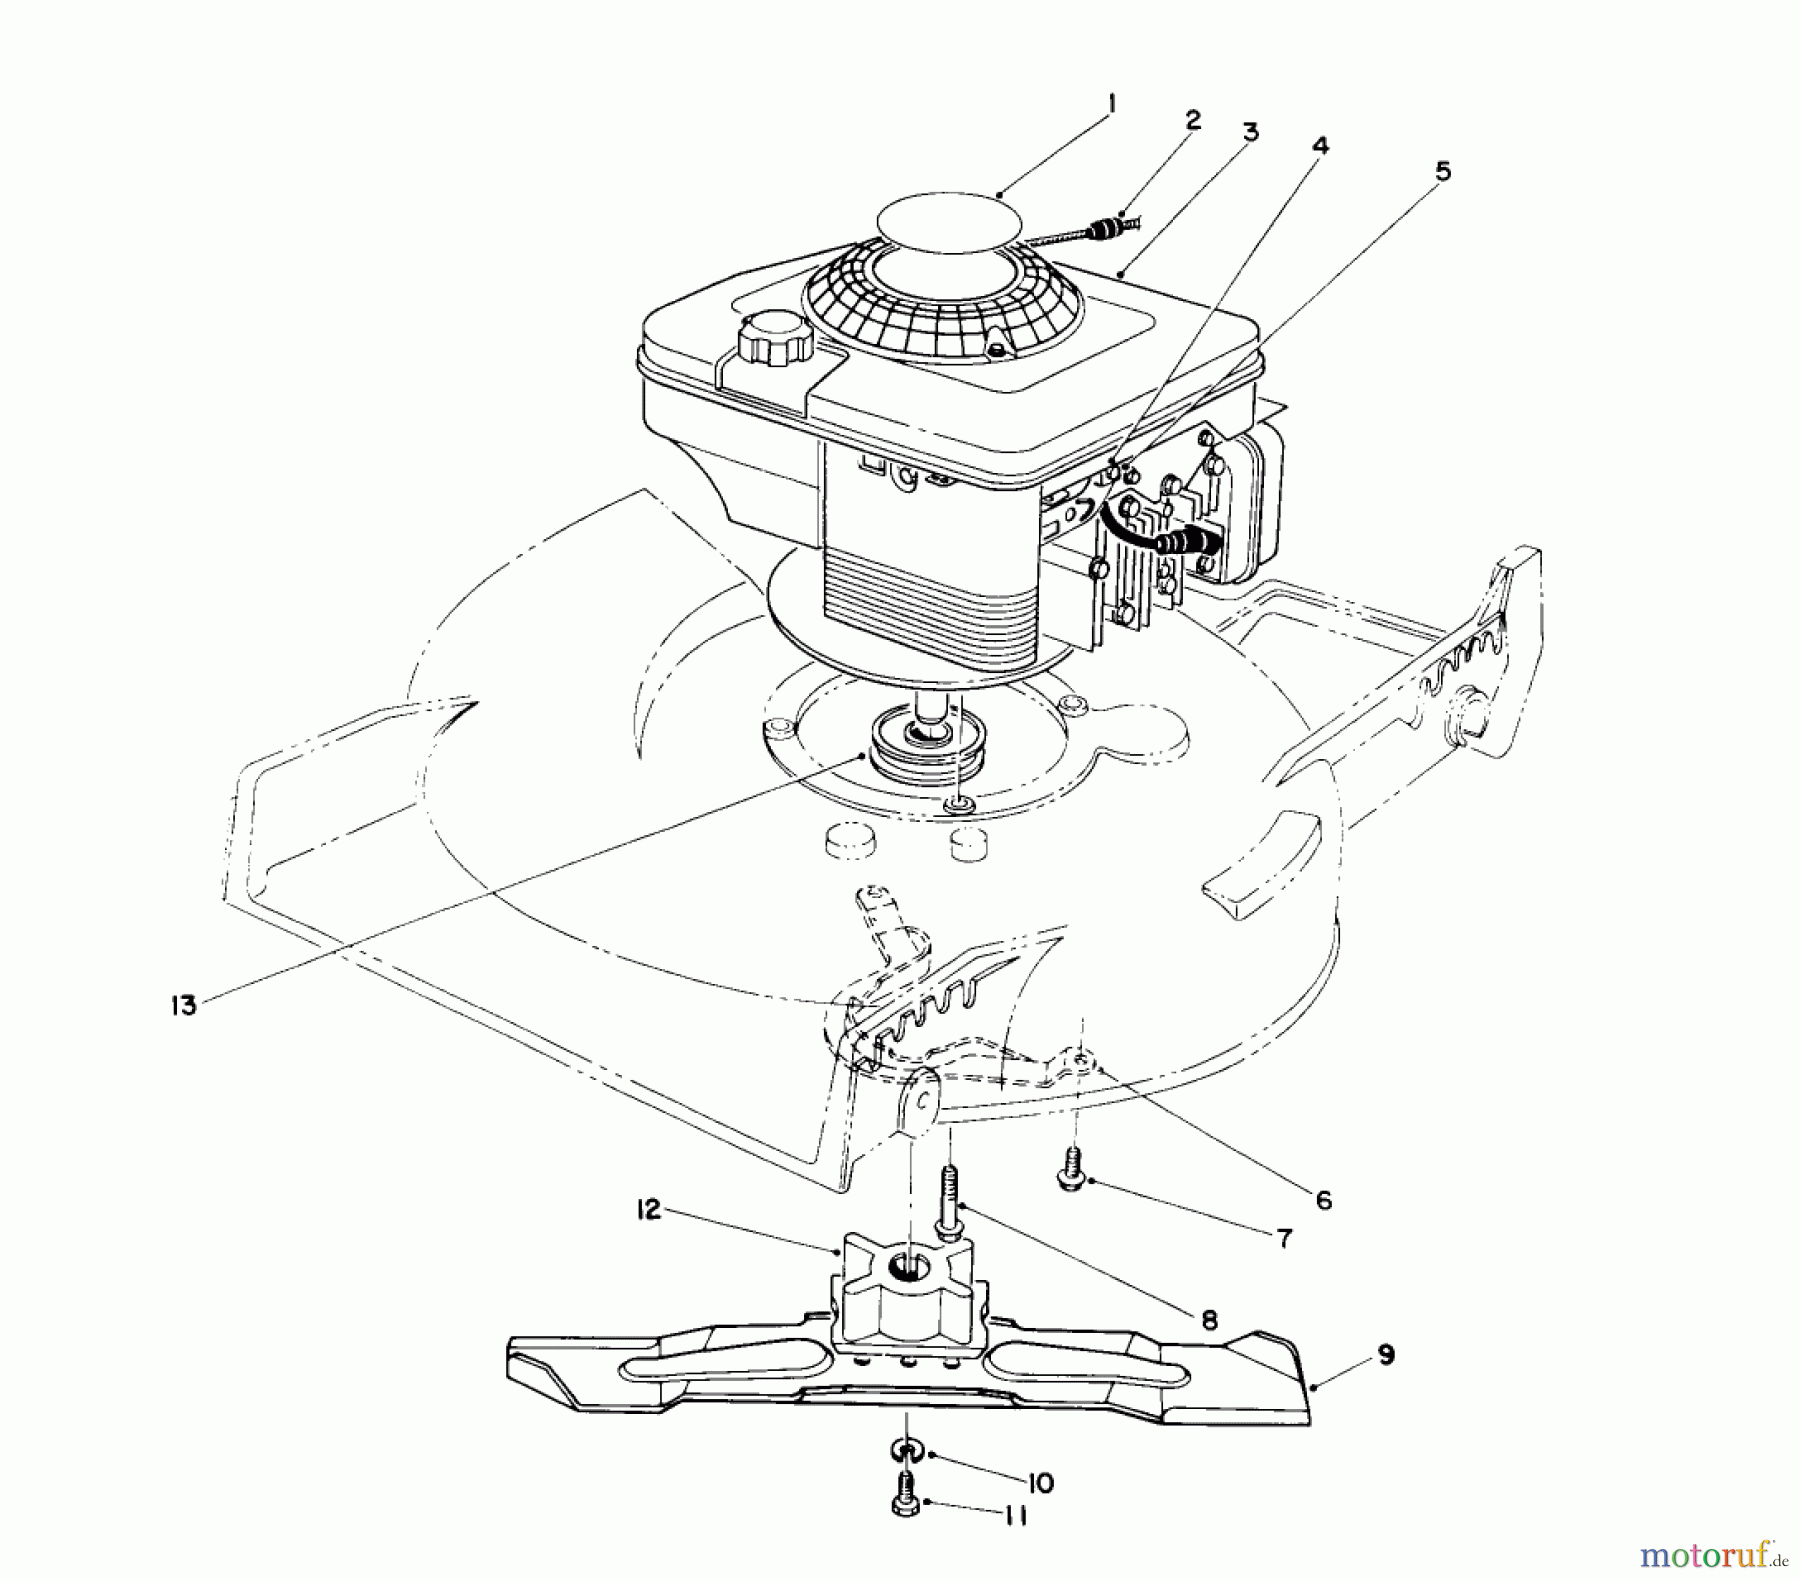  Toro Neu Mowers, Walk-Behind Seite 1 20668 - Toro Lawnmower, 1991 (1000001-1999999) ENGINE ASSEMBLY